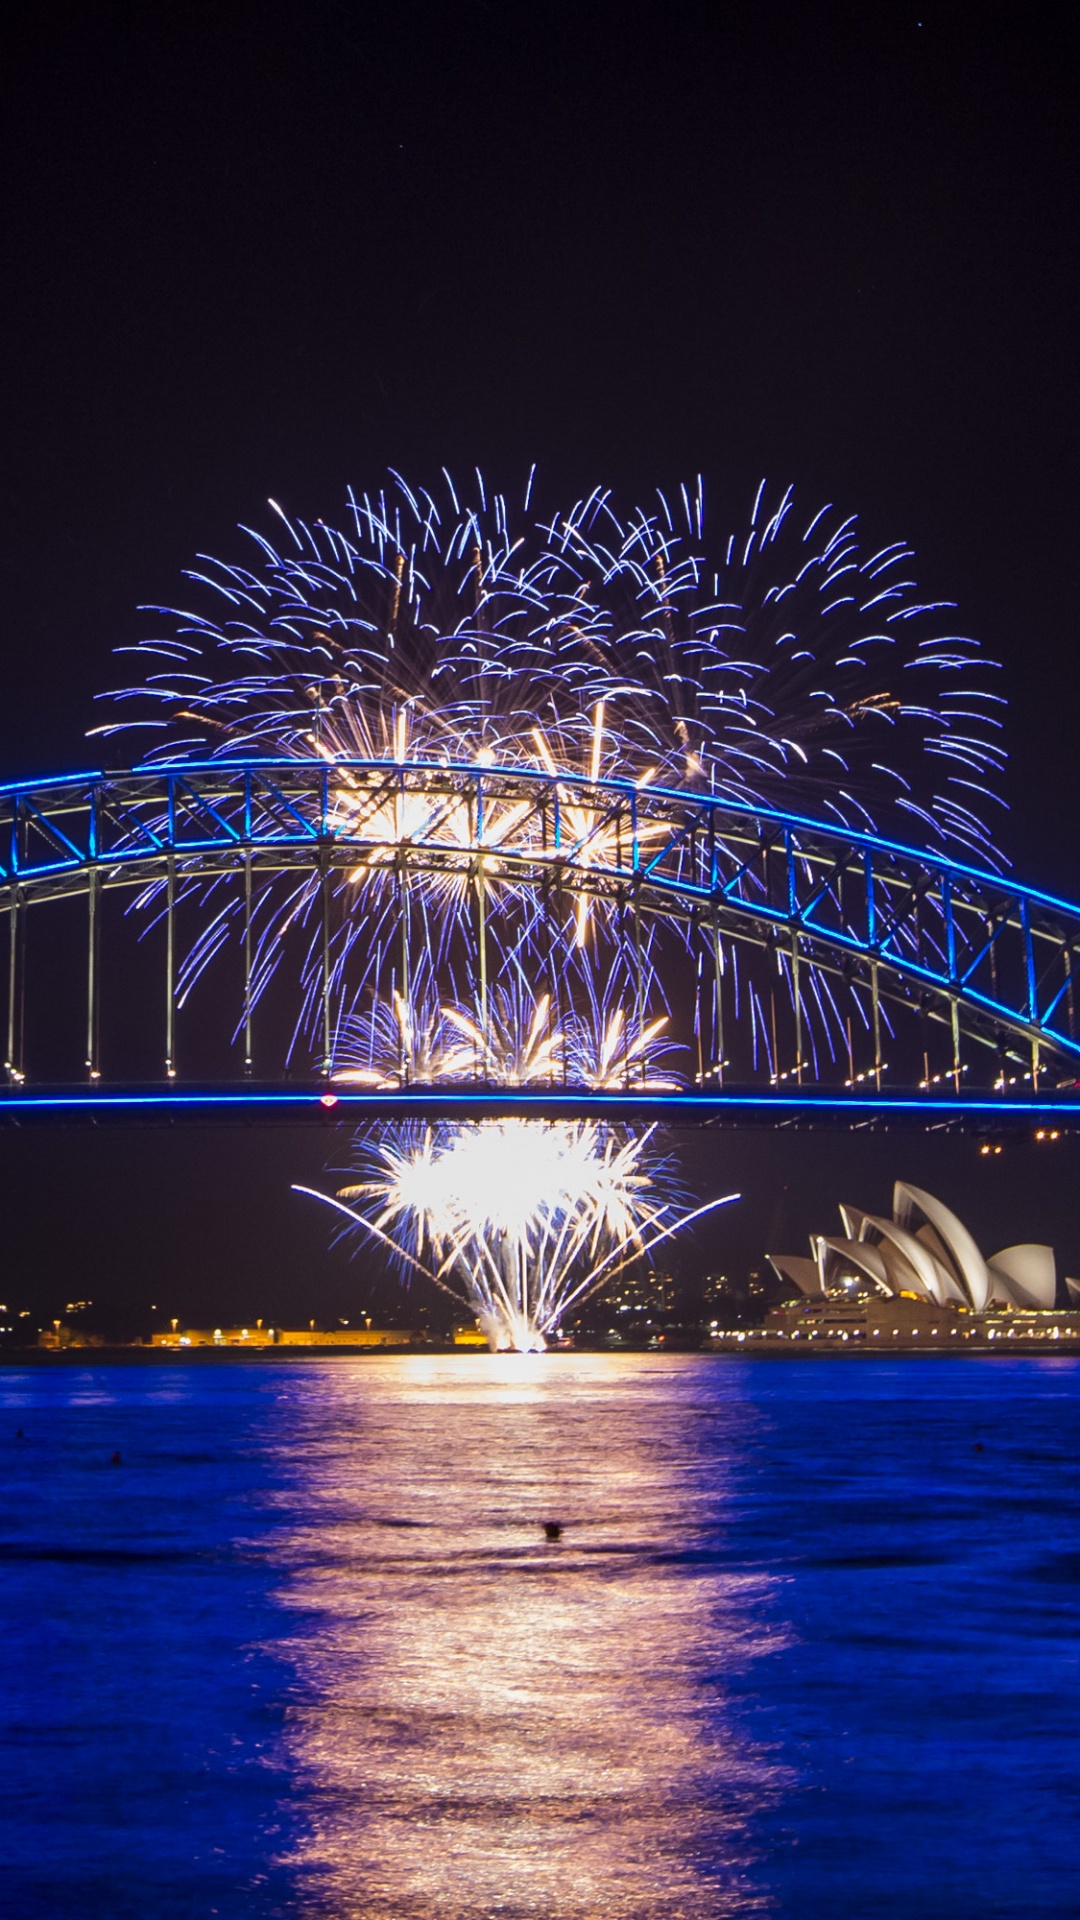 悉尼海港大桥, 悉尼歌剧院, 反射, 里程碑, 旅游景点 壁纸 1080x1920 允许